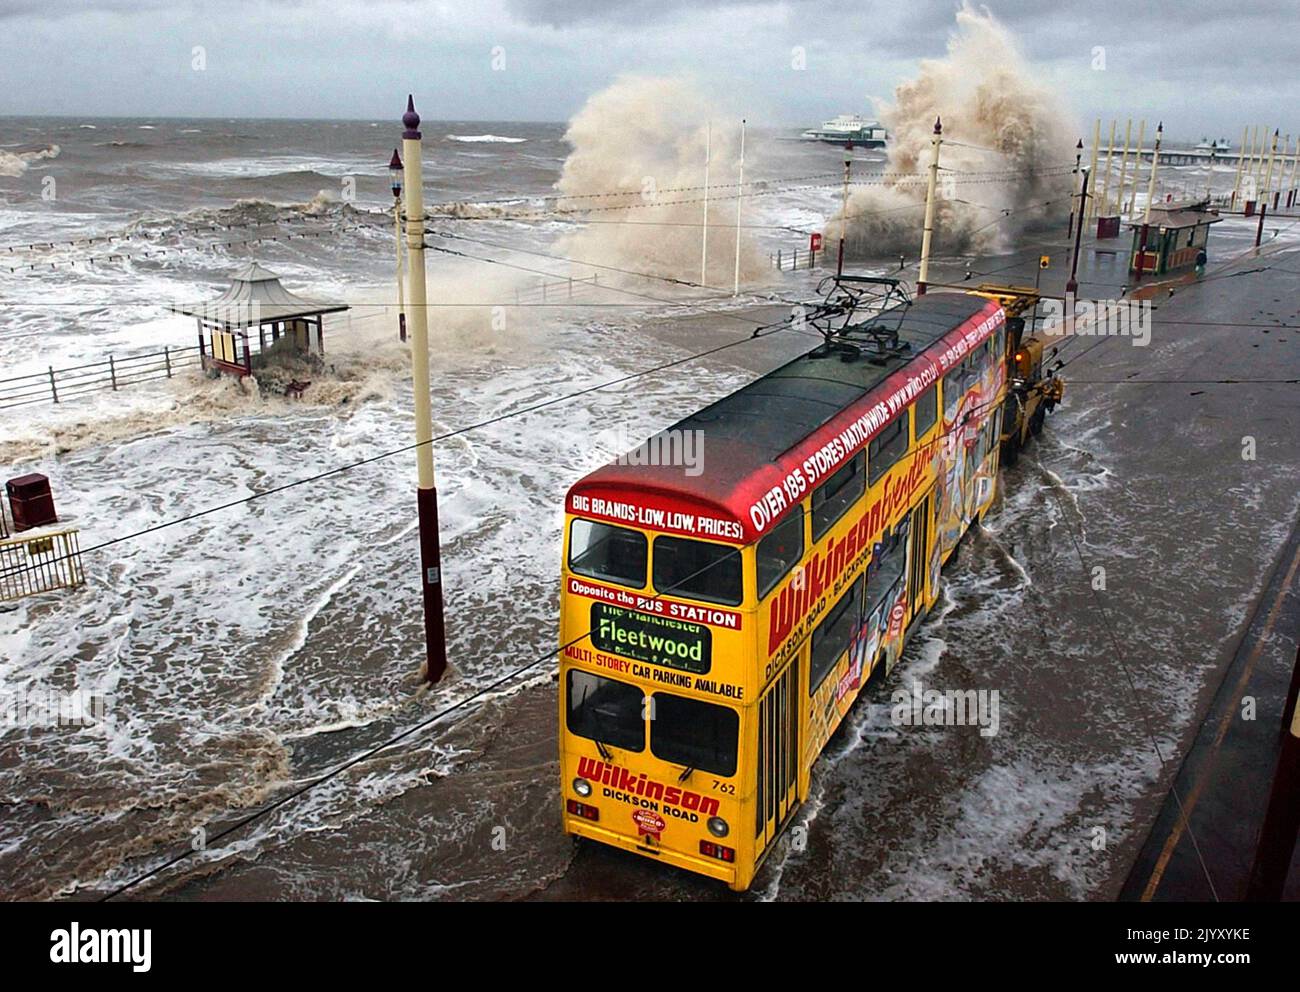 2002: Datei-Foto vom 2002. Februar von einer Straßenbahn an der Küste von Blackpool, die zur Sicherheit vor den hohen Gezeiten und Sturmwinden geschleppt wurde, die die Küste zerschlagen hatten. Ausgabedatum: Donnerstag, 8. September 2022. Stockfoto